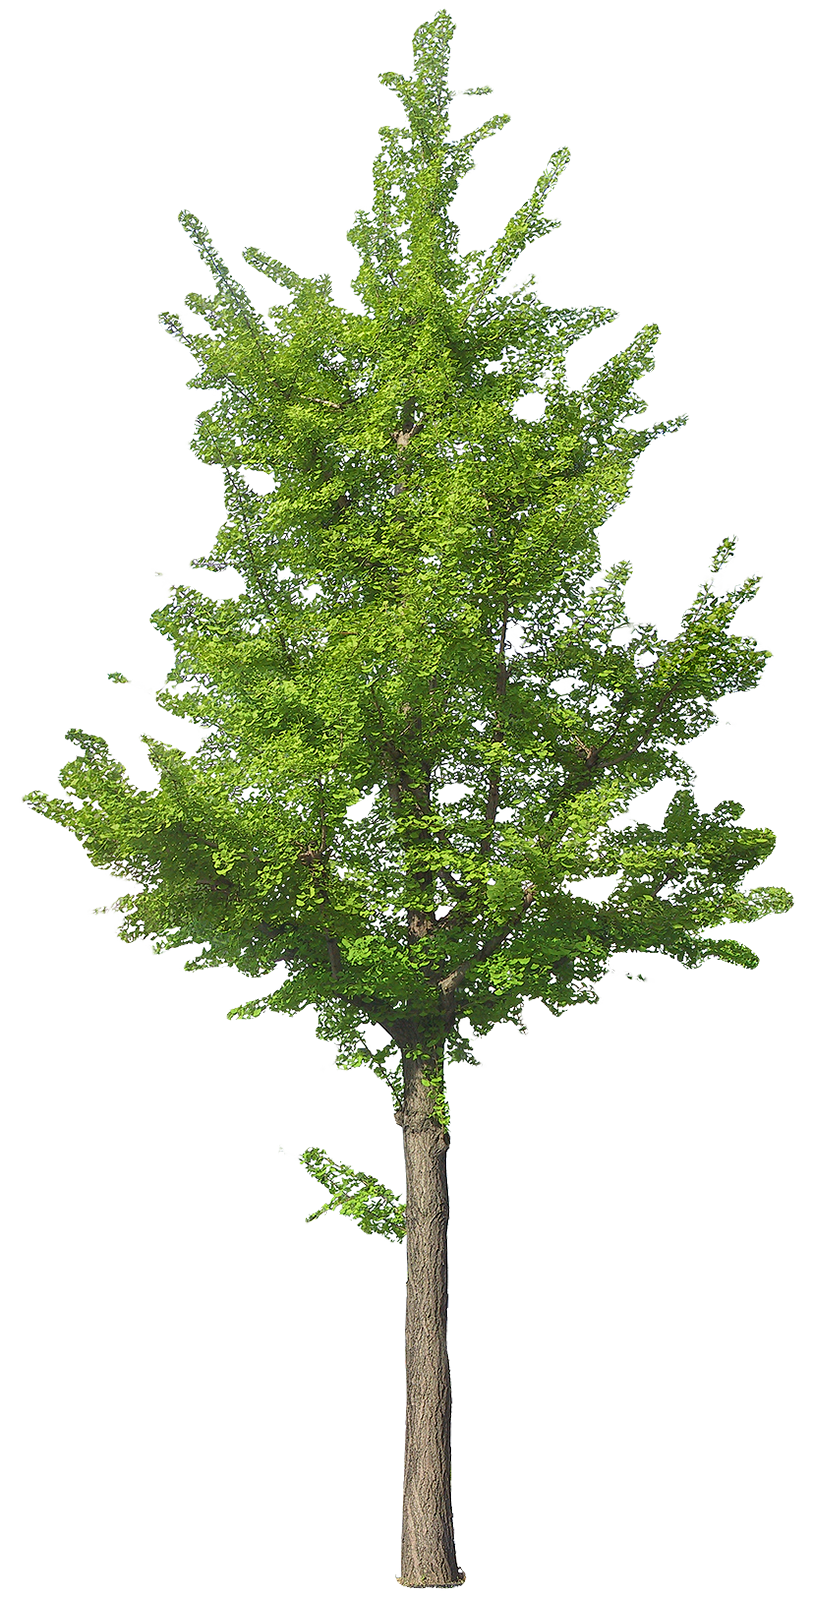 Simplified tree